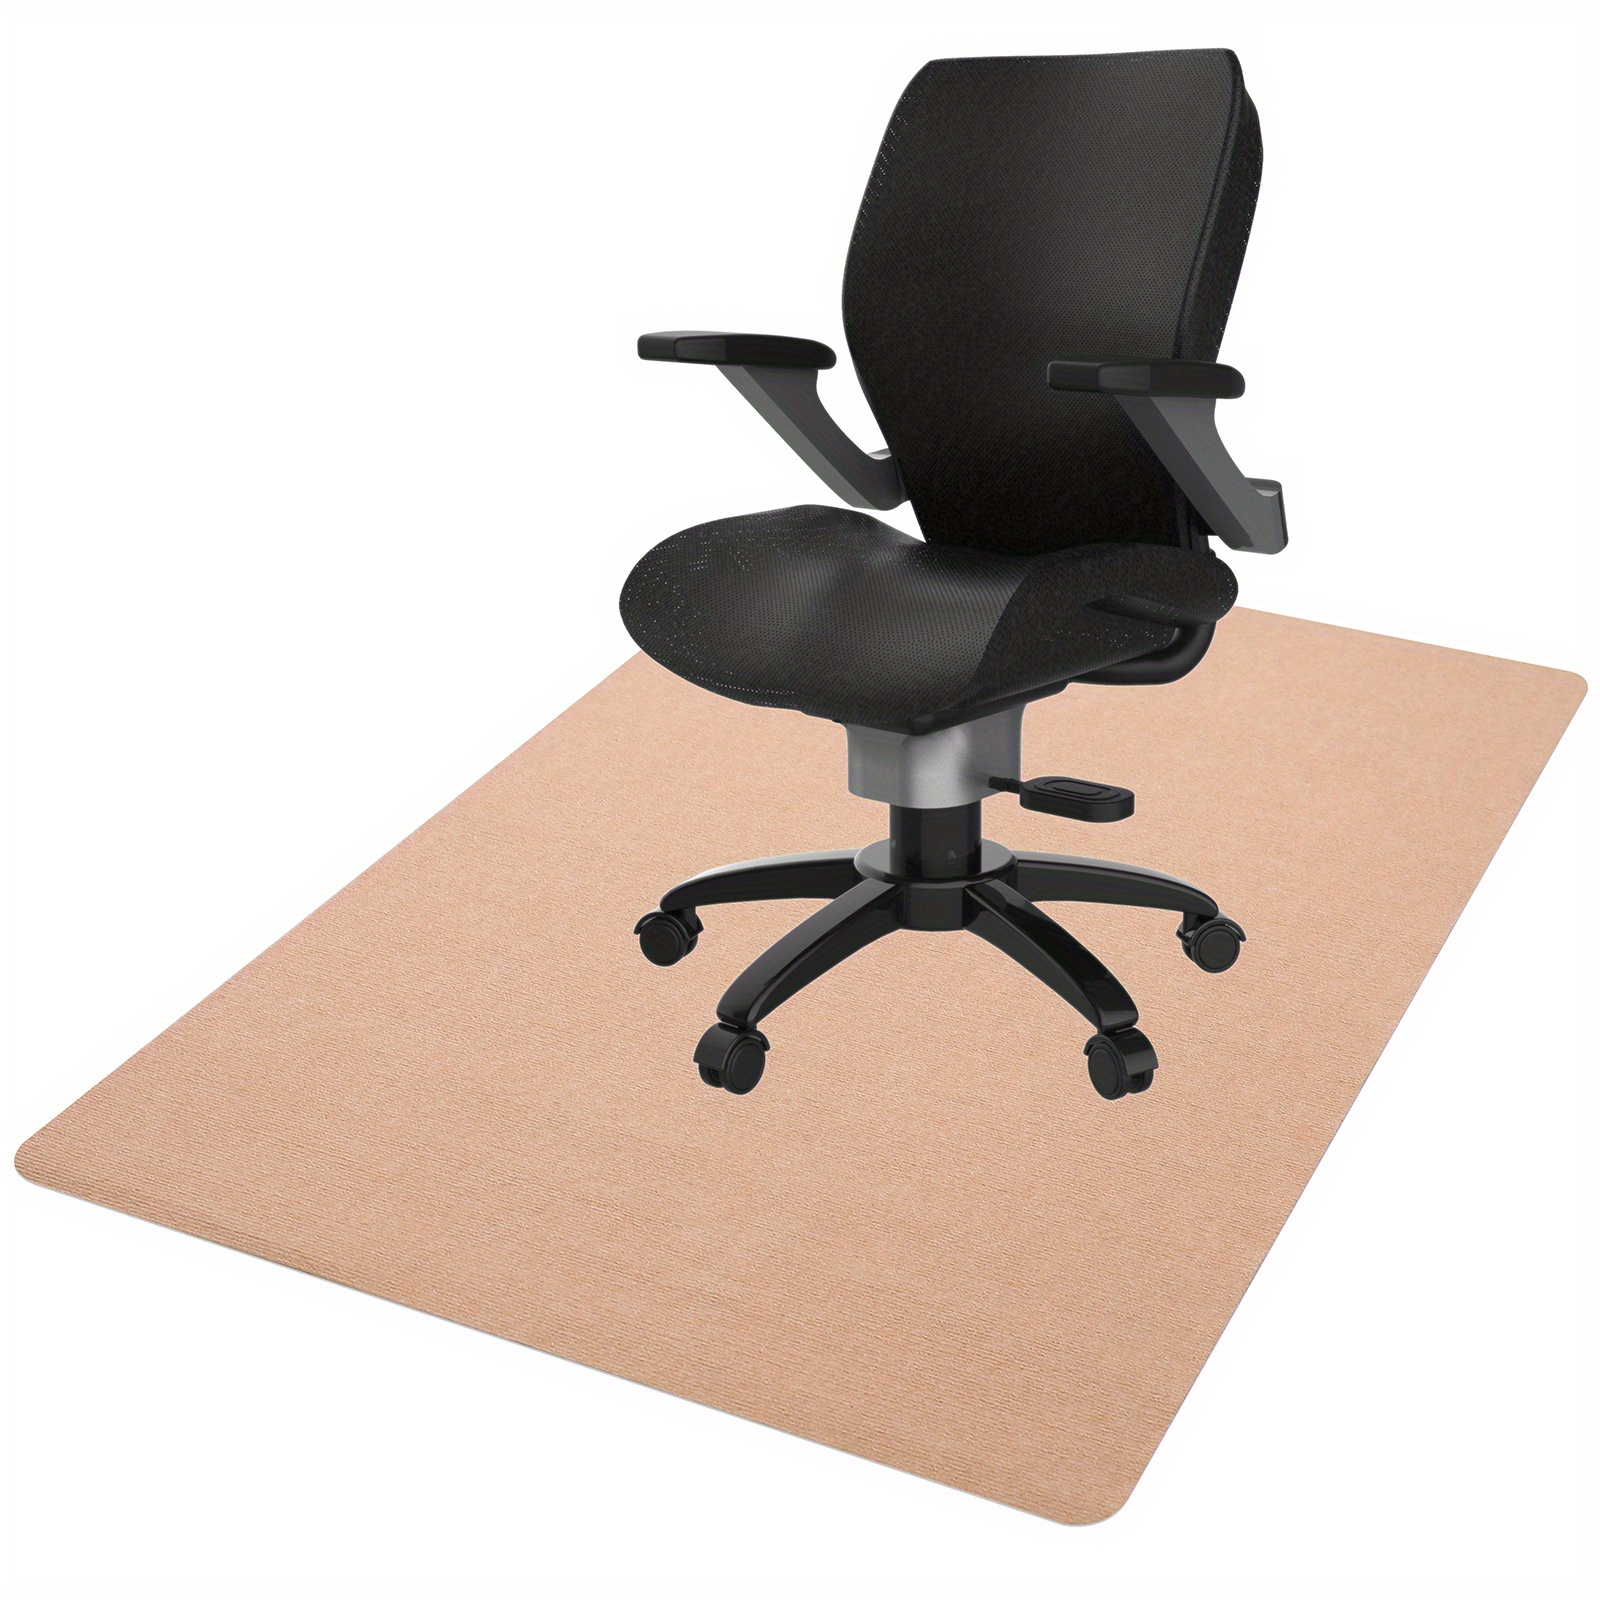 Interlocking Chair Mats are Customizable Chair Mat Tiles